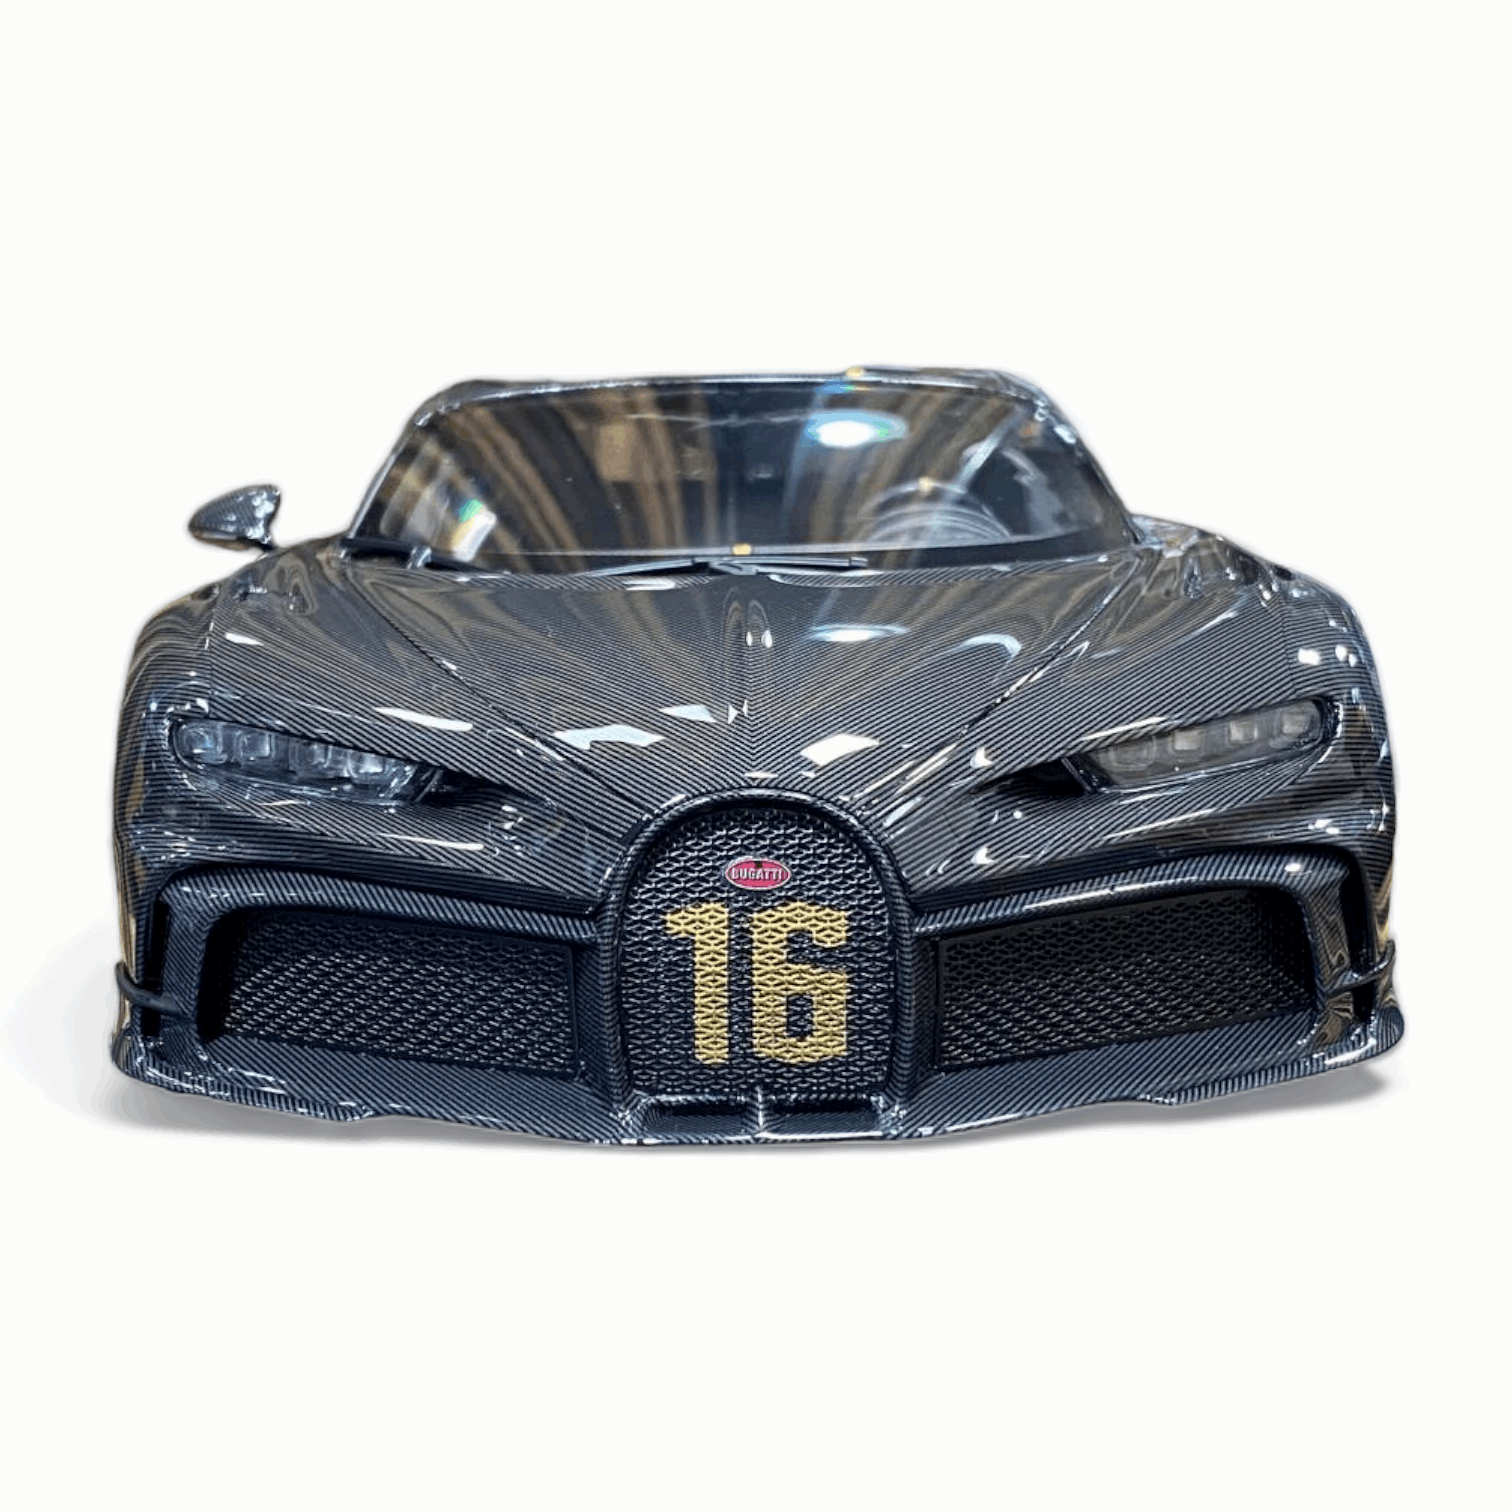 1/18 Bugatti Chiron Pur Sport MR Collection Model|Sold in Dturman.com Dubai UAE.